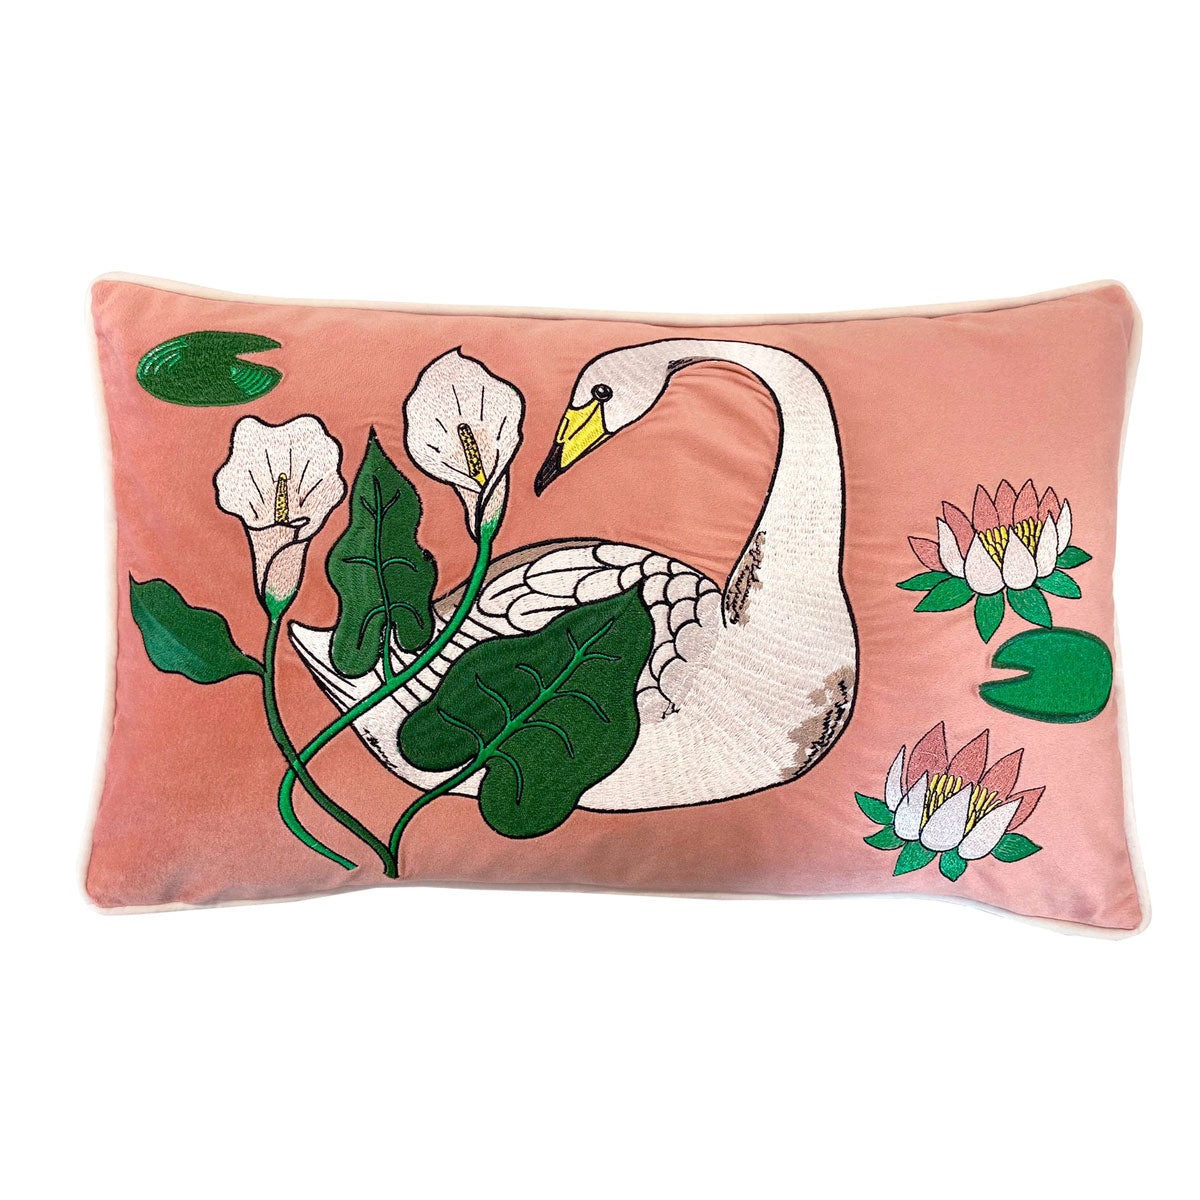 Botanic Swan Whooper Bolster Cushion Cover - Karen Mabon